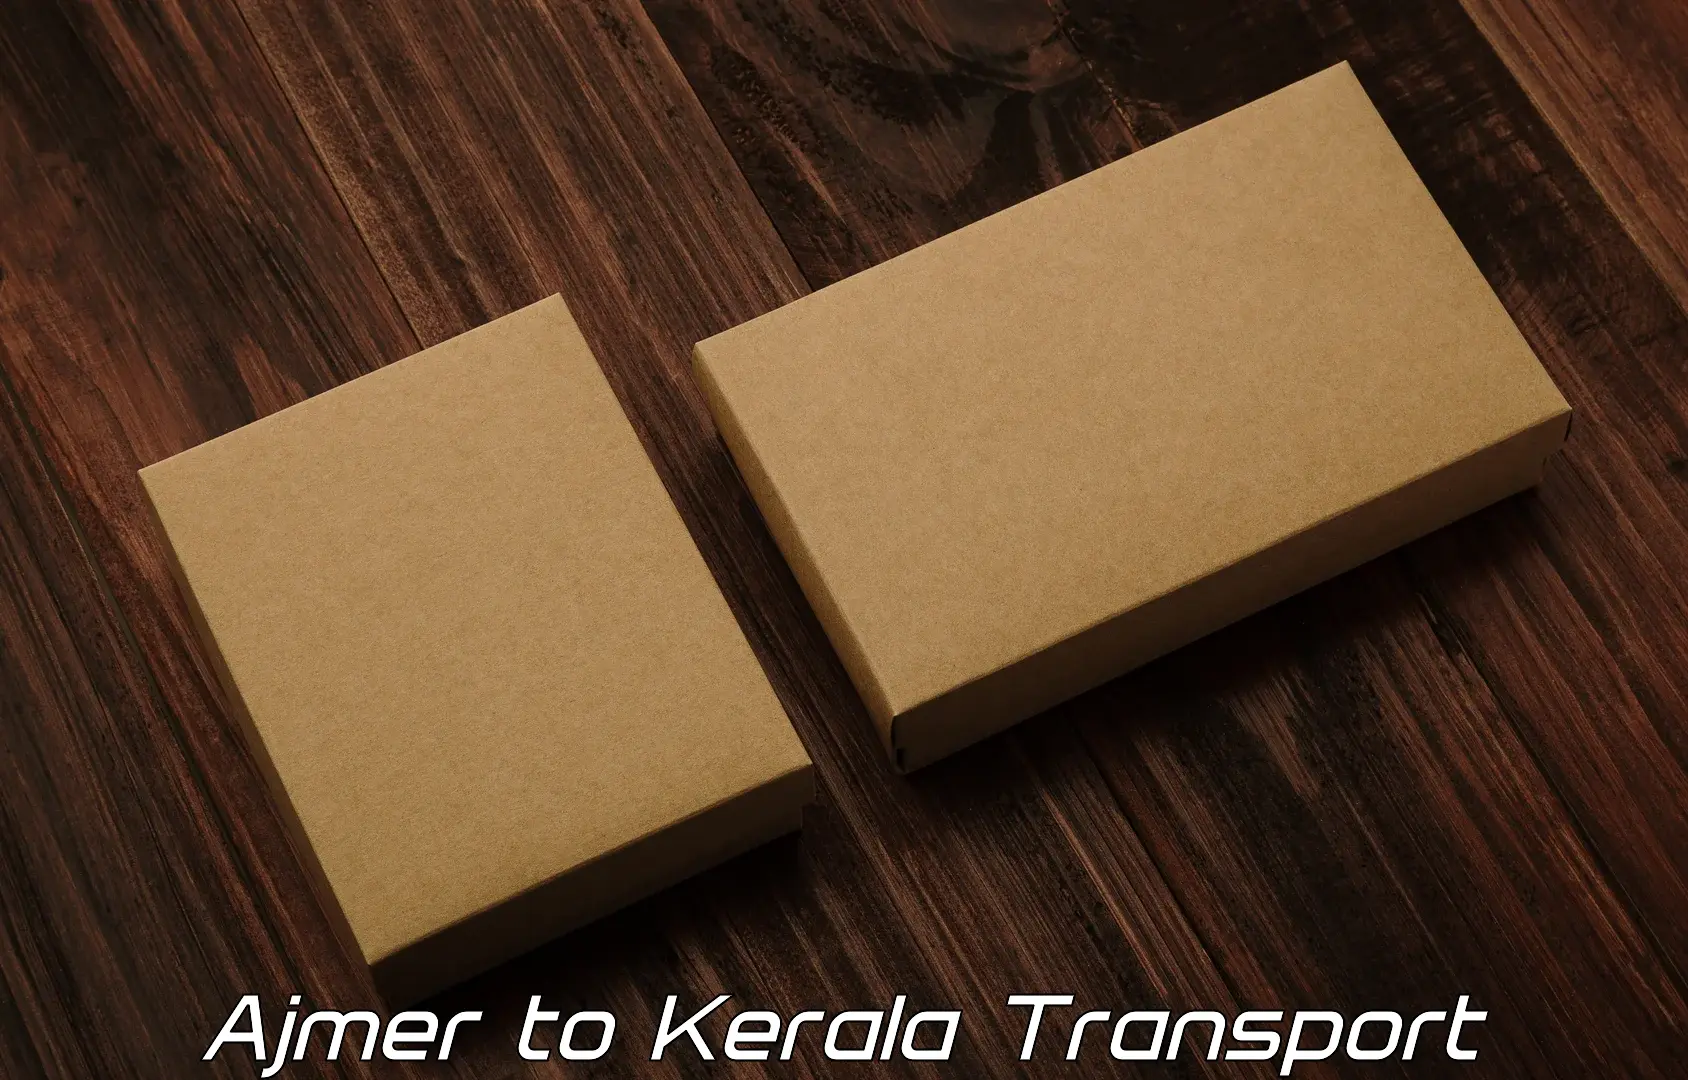 Pick up transport service Ajmer to Cherthala